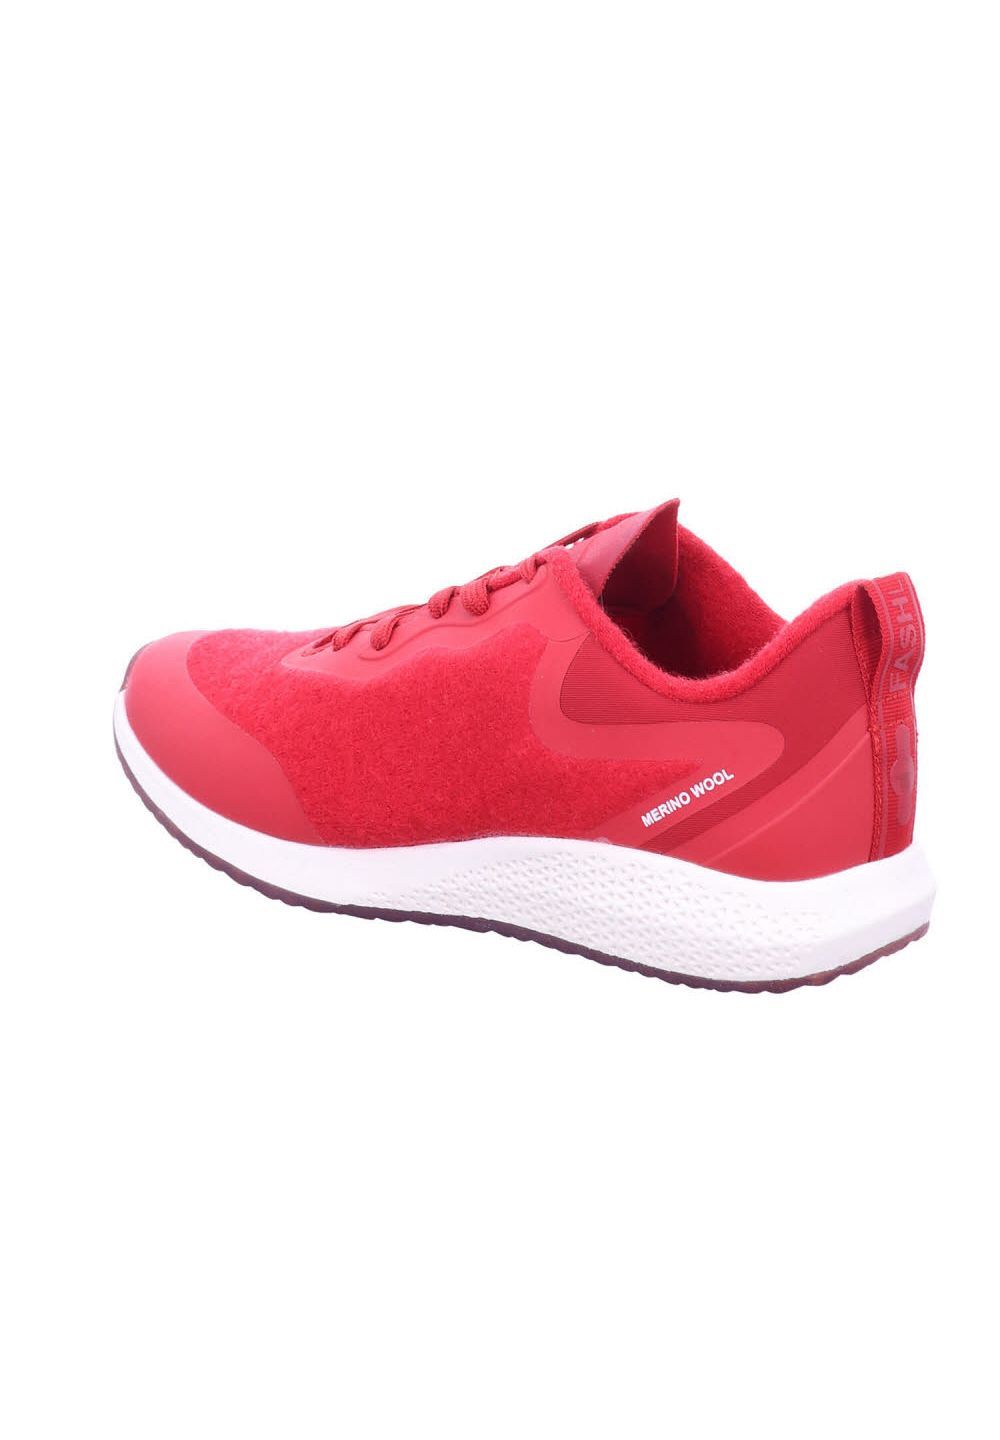 Damen Schuhe Tamaris Sneaker 1-1-23734-24/501